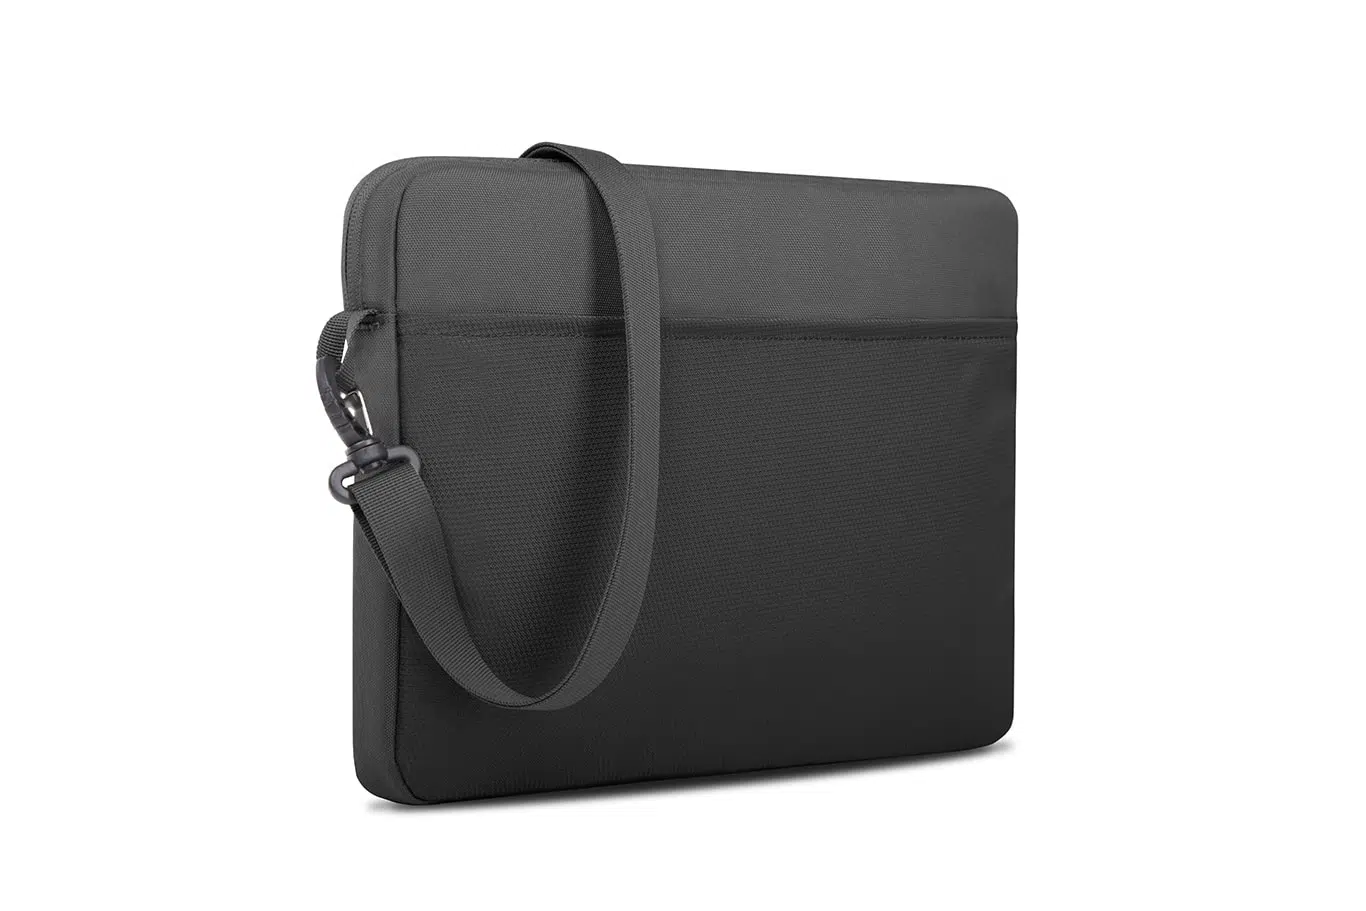 กระเป๋าโน๊ตบุ๊ค STM รุ่น Blazer Laptop Sleeve (15") - Granite Grey